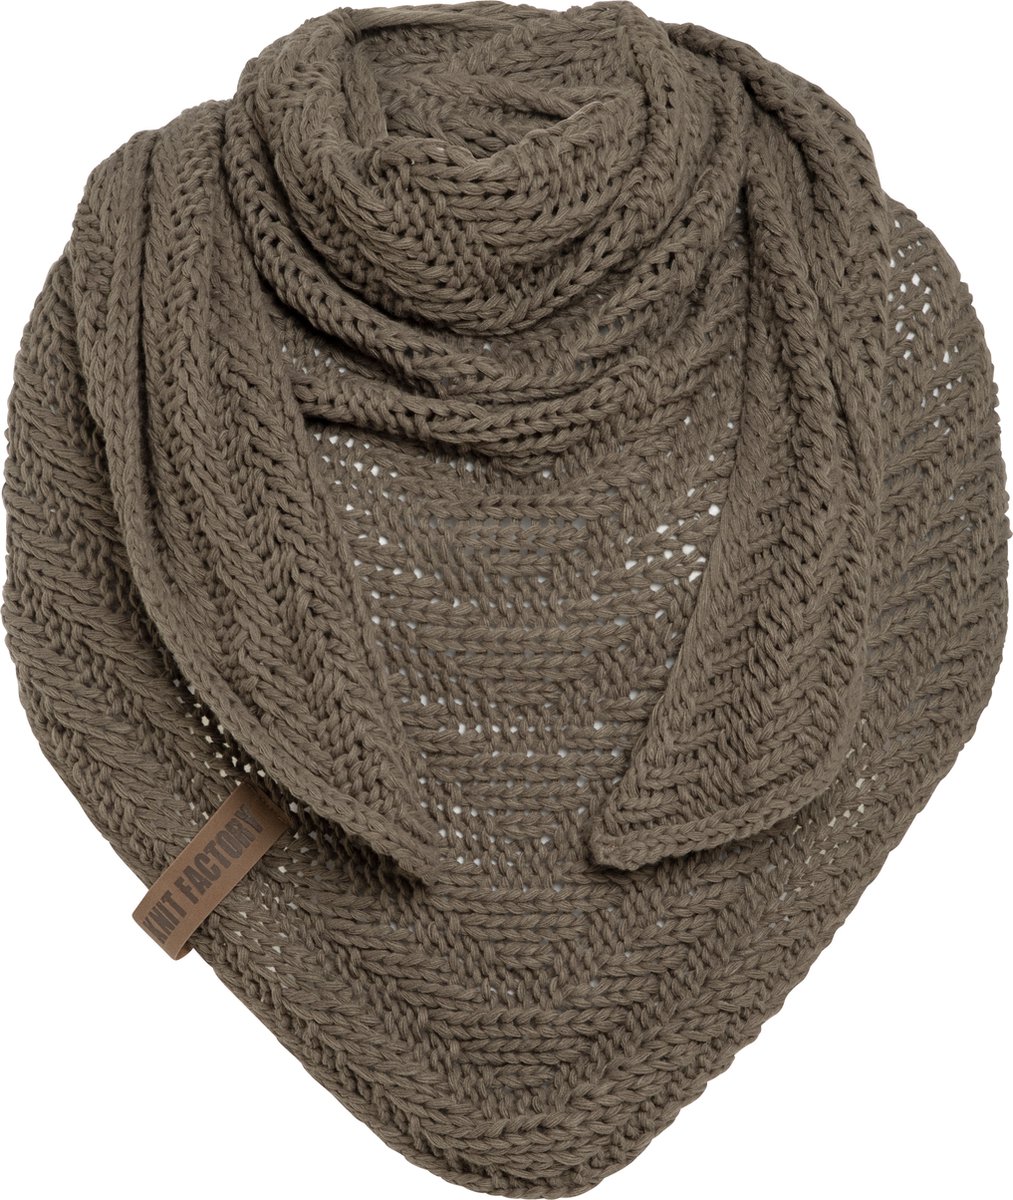 Knit Factory Sally Gebreide Omslagdoek - Driehoek Sjaal Dames - Dames sjaal - Wintersjaal - Stola - Wollen sjaal - Bruine sjaal - Cappuccino - 220x85 cm - Grof gebreid